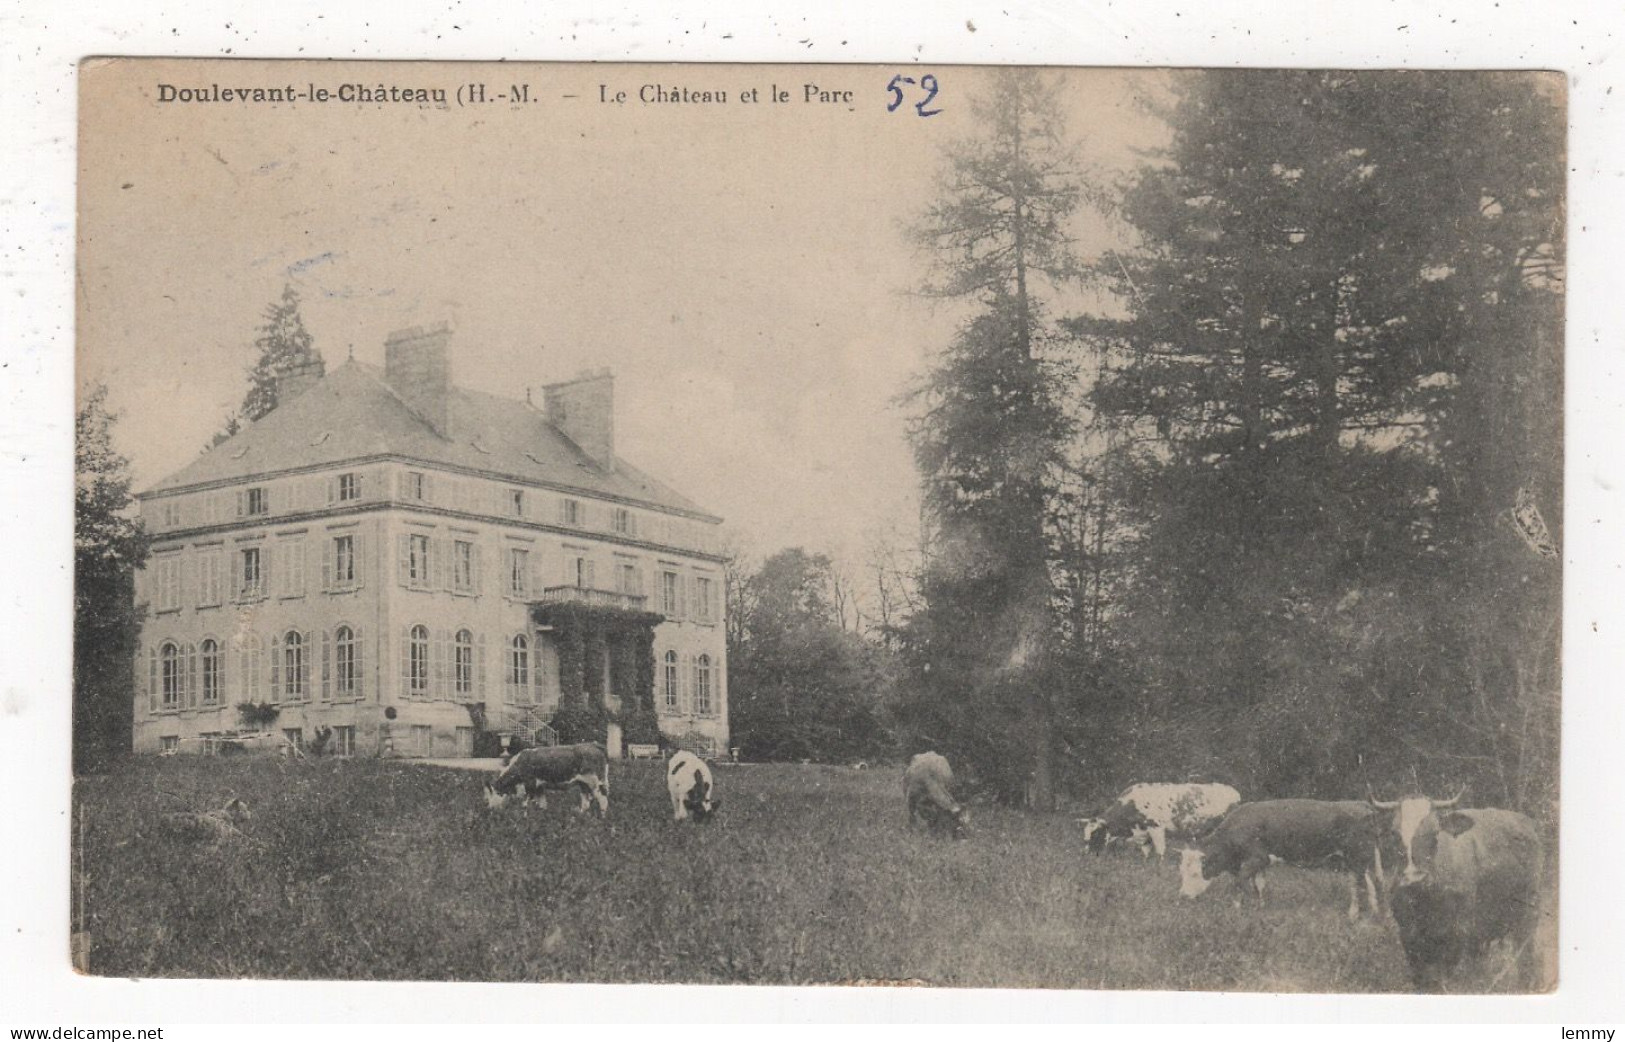 52 - DOULEVANT-LE-CHATEAU -  VACHES AU PACAGE, PARC DU CHATEAU - 1919 - Doulevant-le-Château